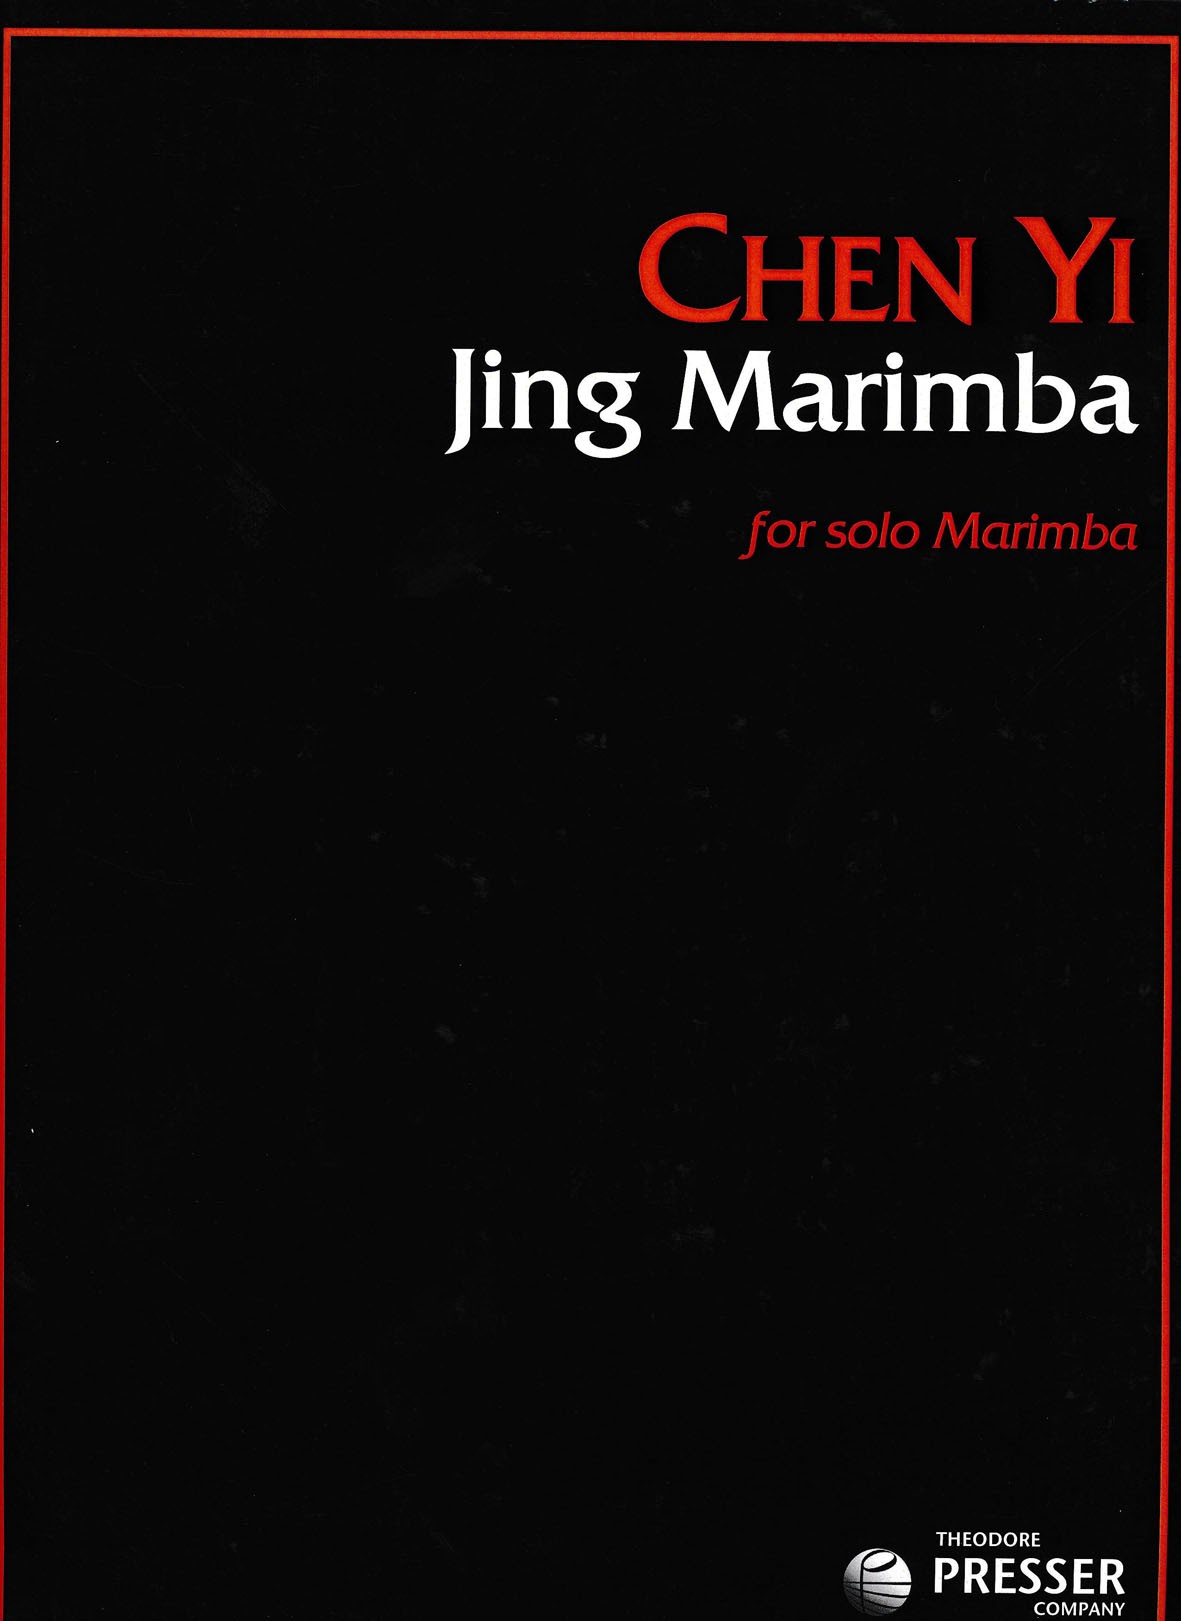 Jing Marimba by Chen Yi